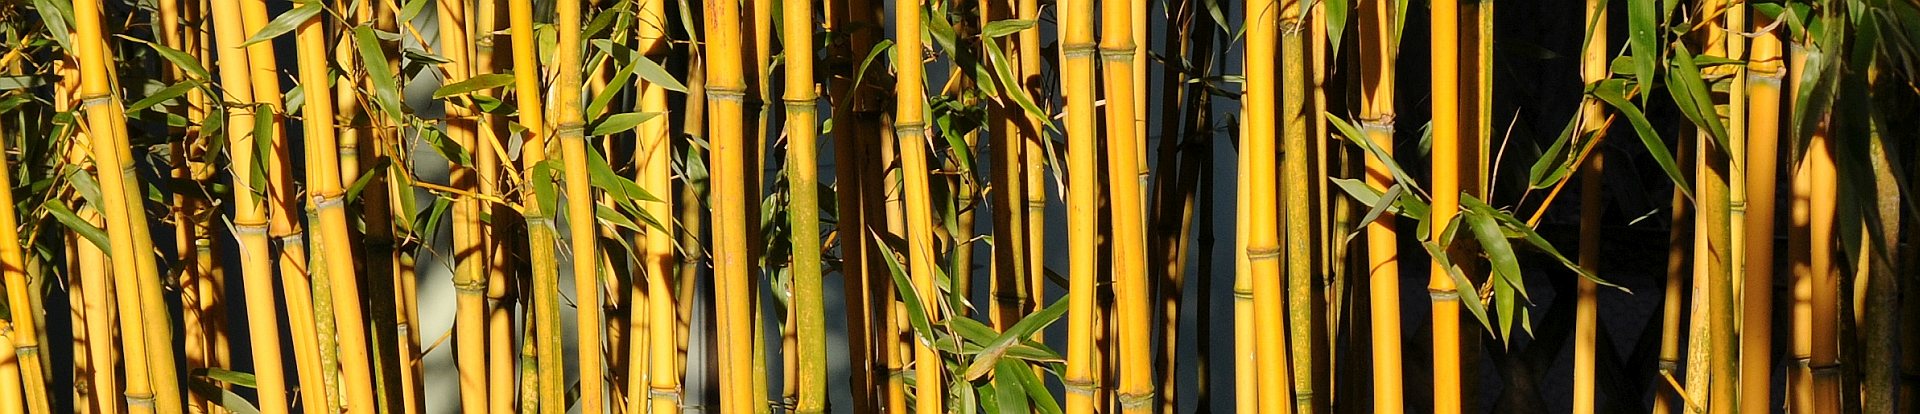 Phyllostachus aureosulcata aureocaulis - Goldener Peking Bambus